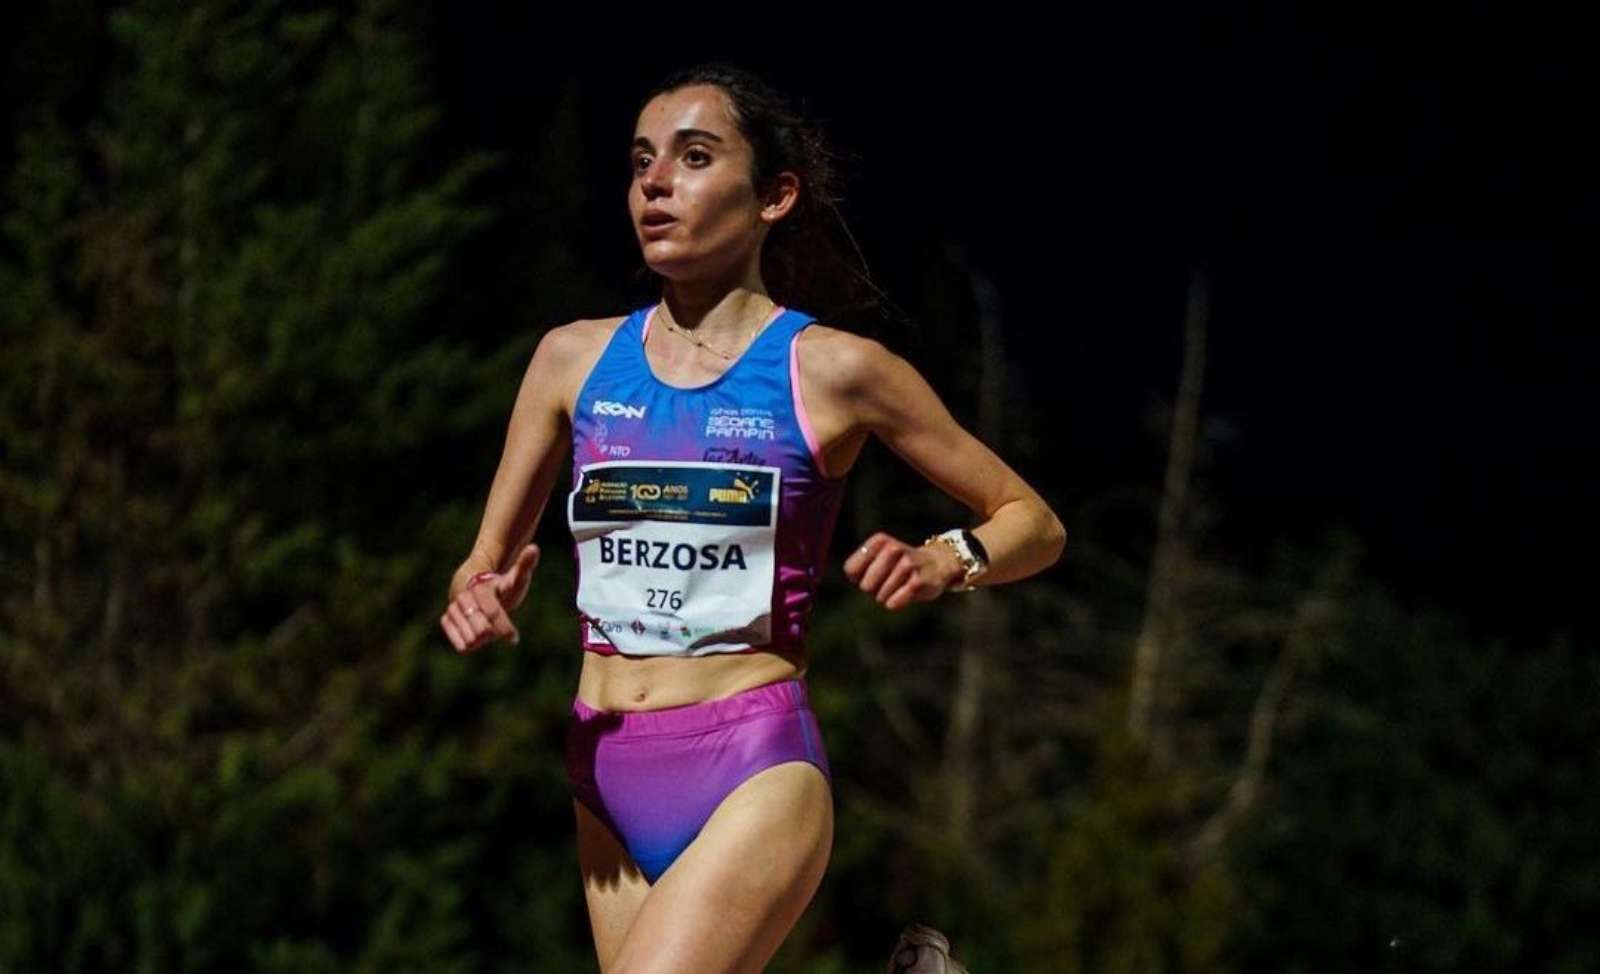 La tomellosera Alicia Berzosa, campeona de España Sub 23 de 10.000 metros